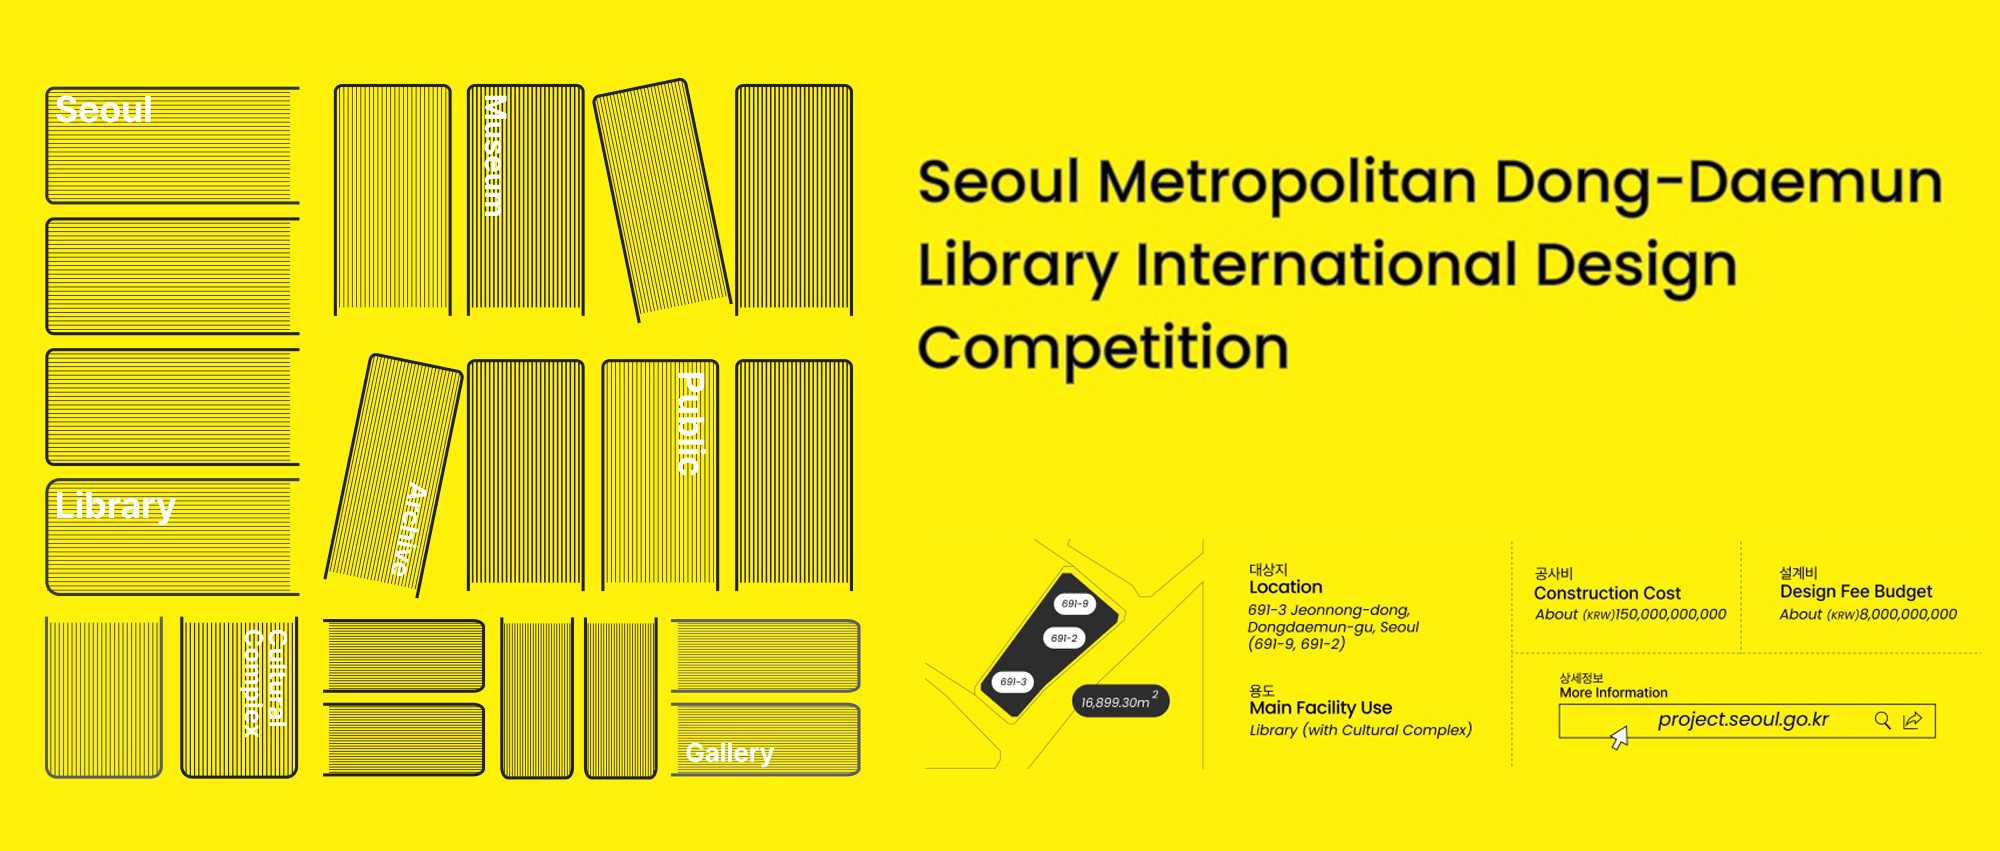 首尔大都会东大门图书馆设计竞赛（正式公告）